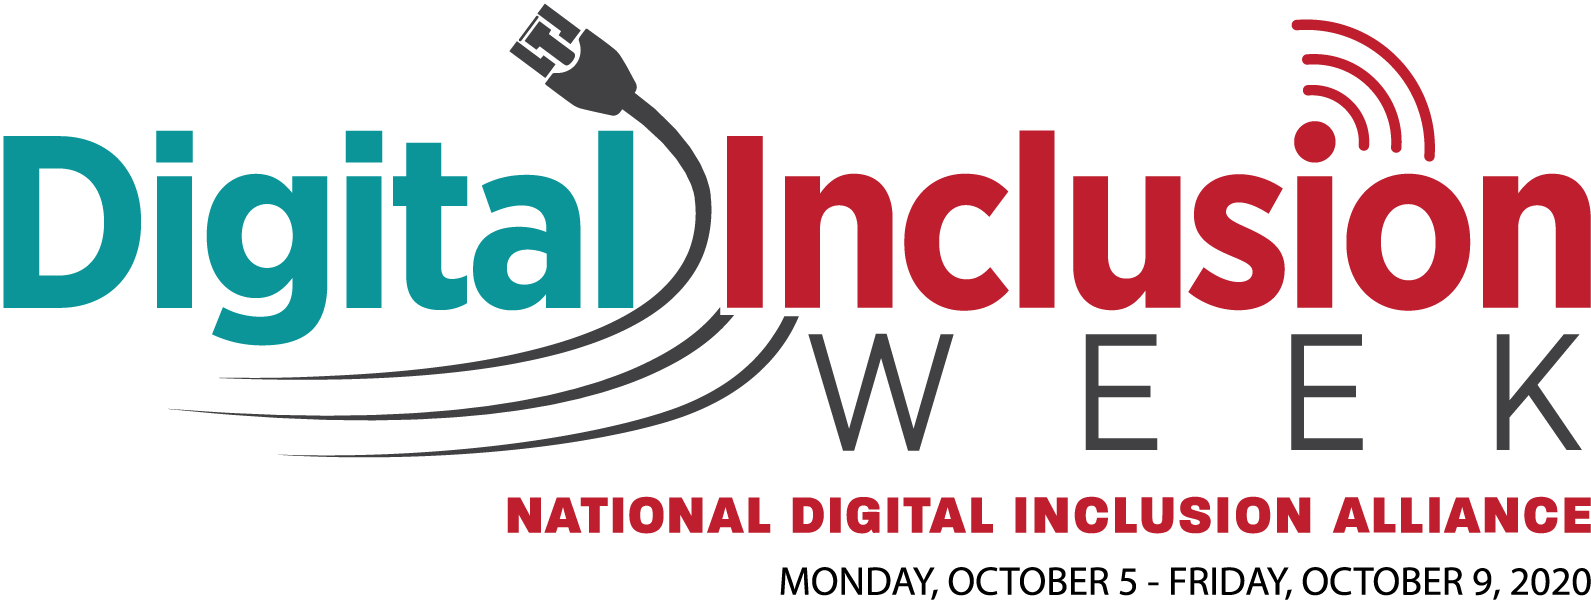 Digital Inclusion Week Logo